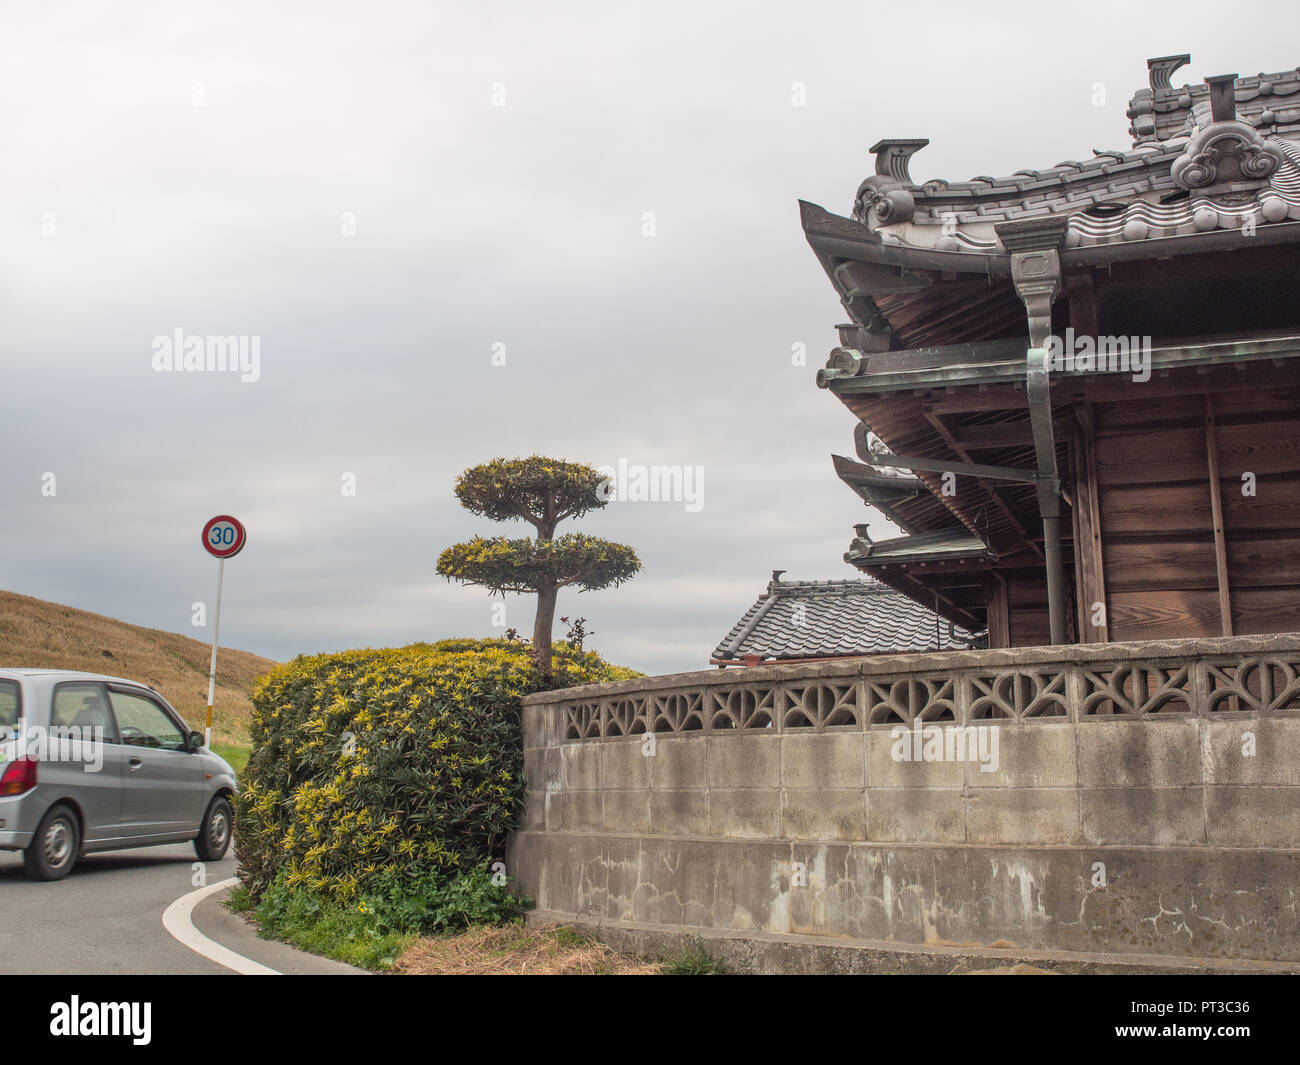 Una vettura che gira intorno a un angolo, road accanto alla tradizionale giapponese del farm house, tetto di tegole con decorazione, una parete incontra una siepe, Yoshino, Takamatsu, Giappone Foto Stock